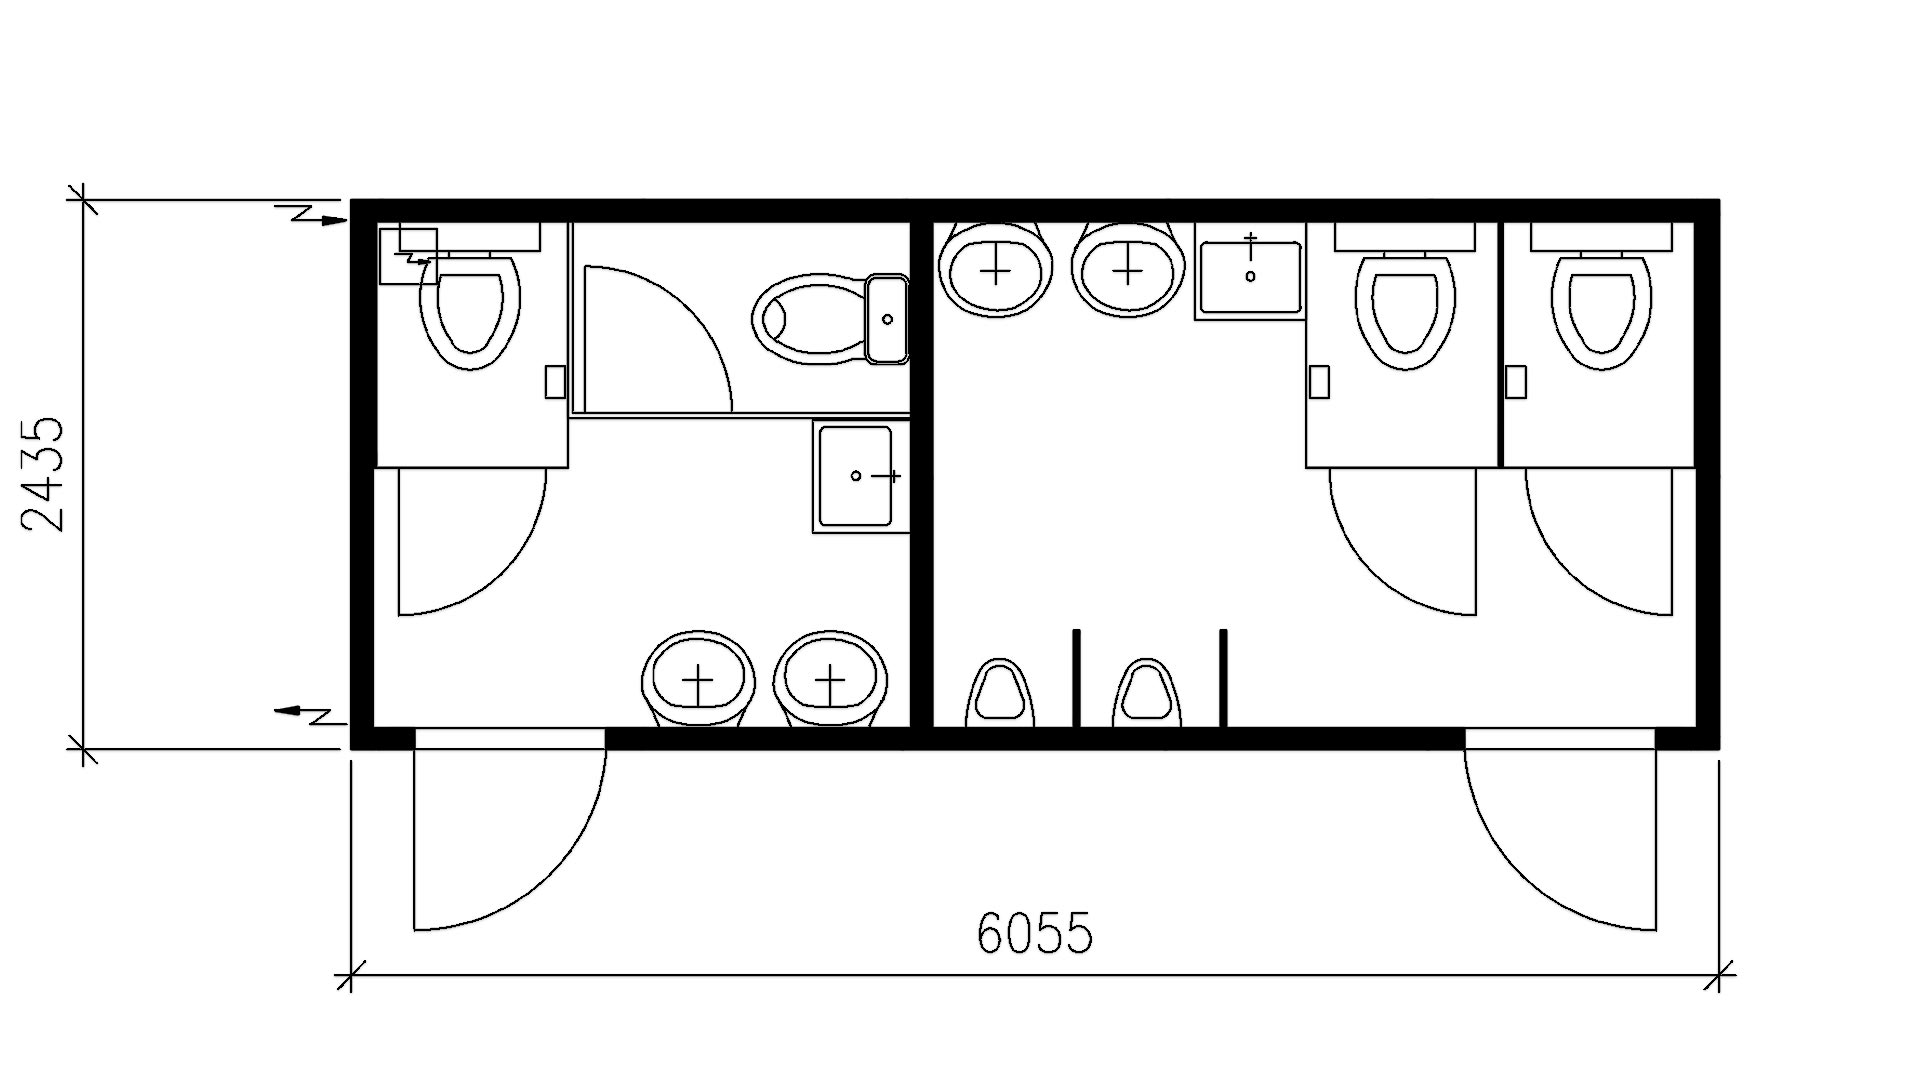 Планировка туалета на 2 секции (4 унитаза, 6 умывальников, 2 писсуара) 20-футов, размеры: 6055/2435/2750 (Д/Ш/В) в мм